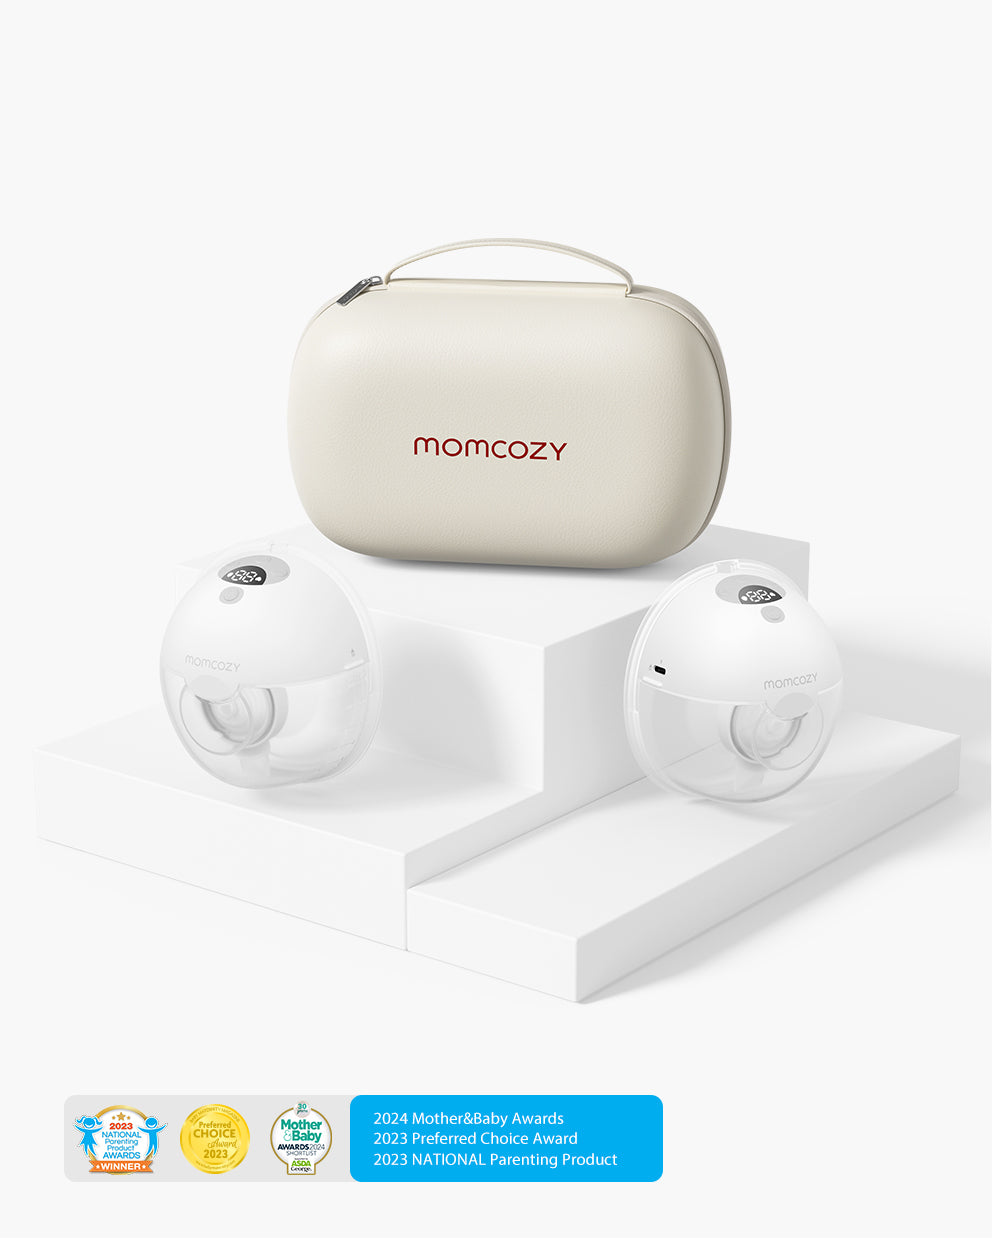 Momcozy Muse 5 Portable Breast Pump Mains libres, Maroc